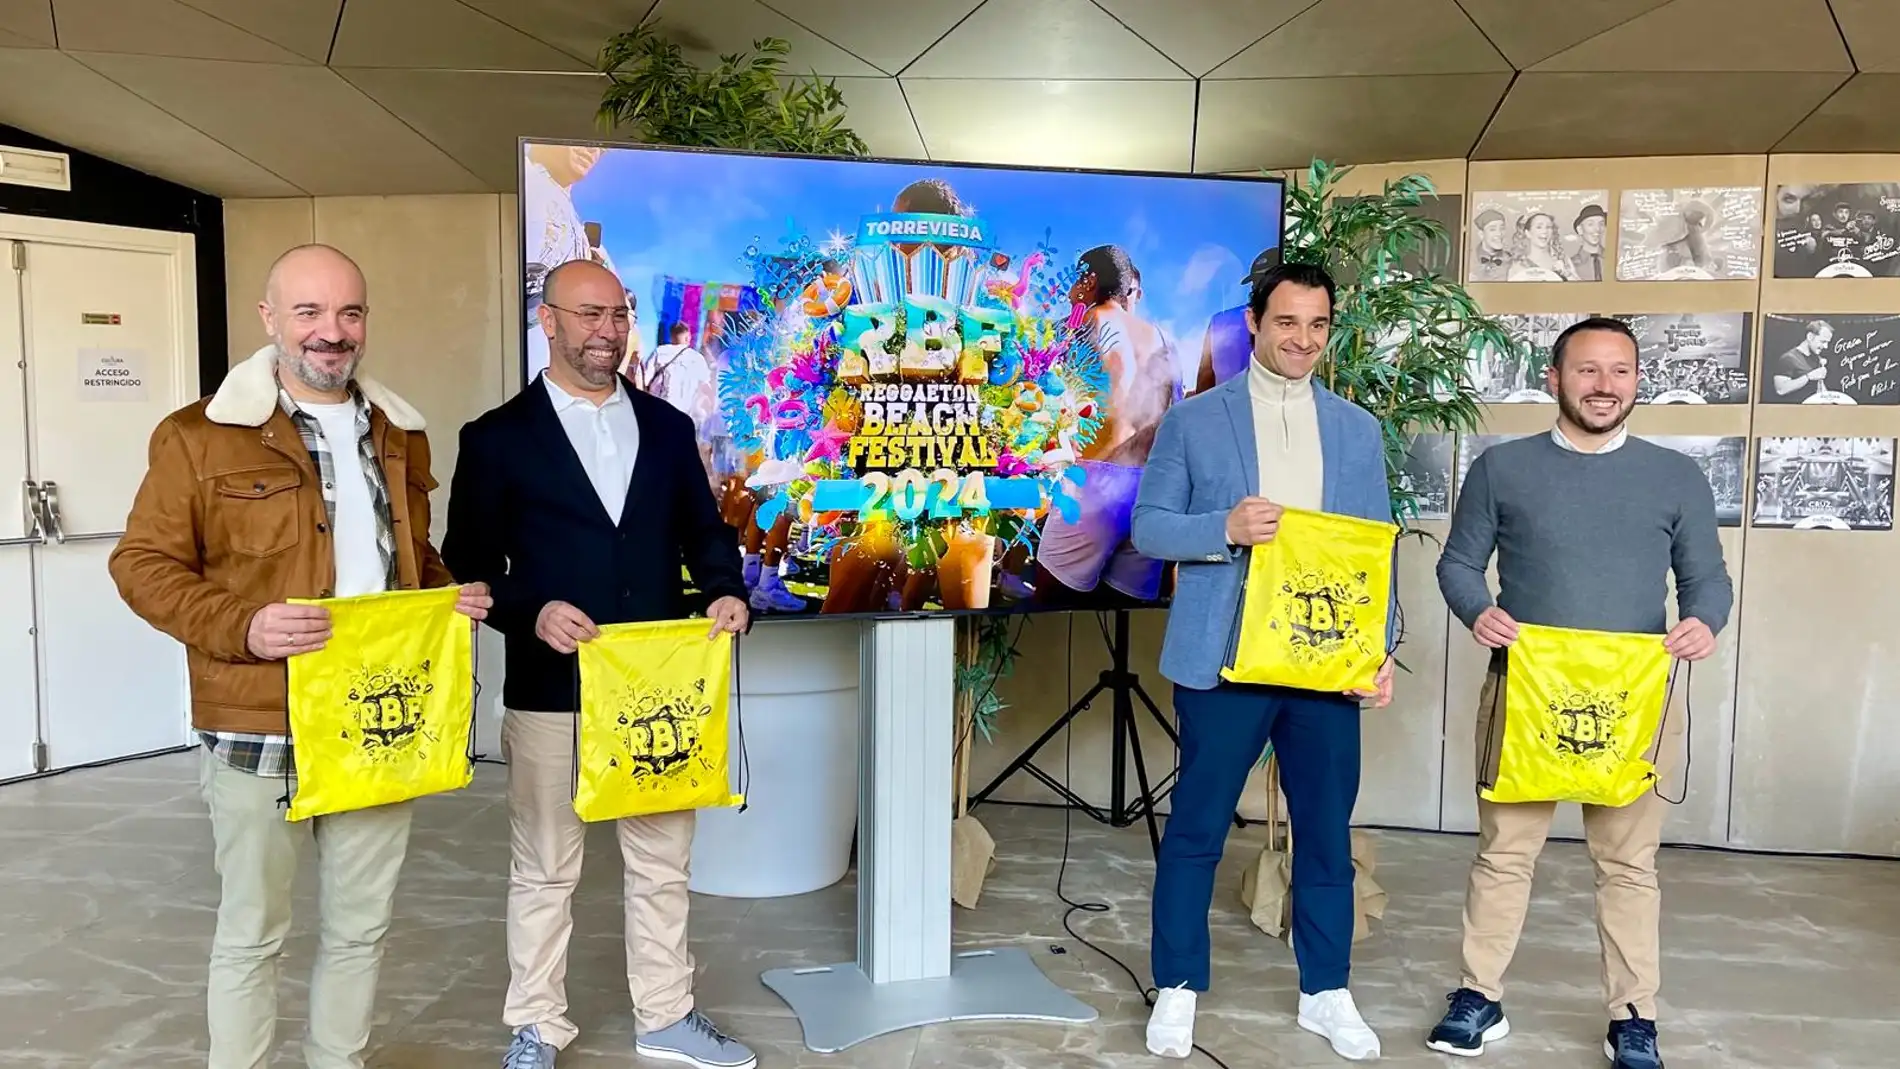 El Reggaeton Beach Festival confirma a Manuel Turizo como uno de los cabezas de cartel en Torrevieja